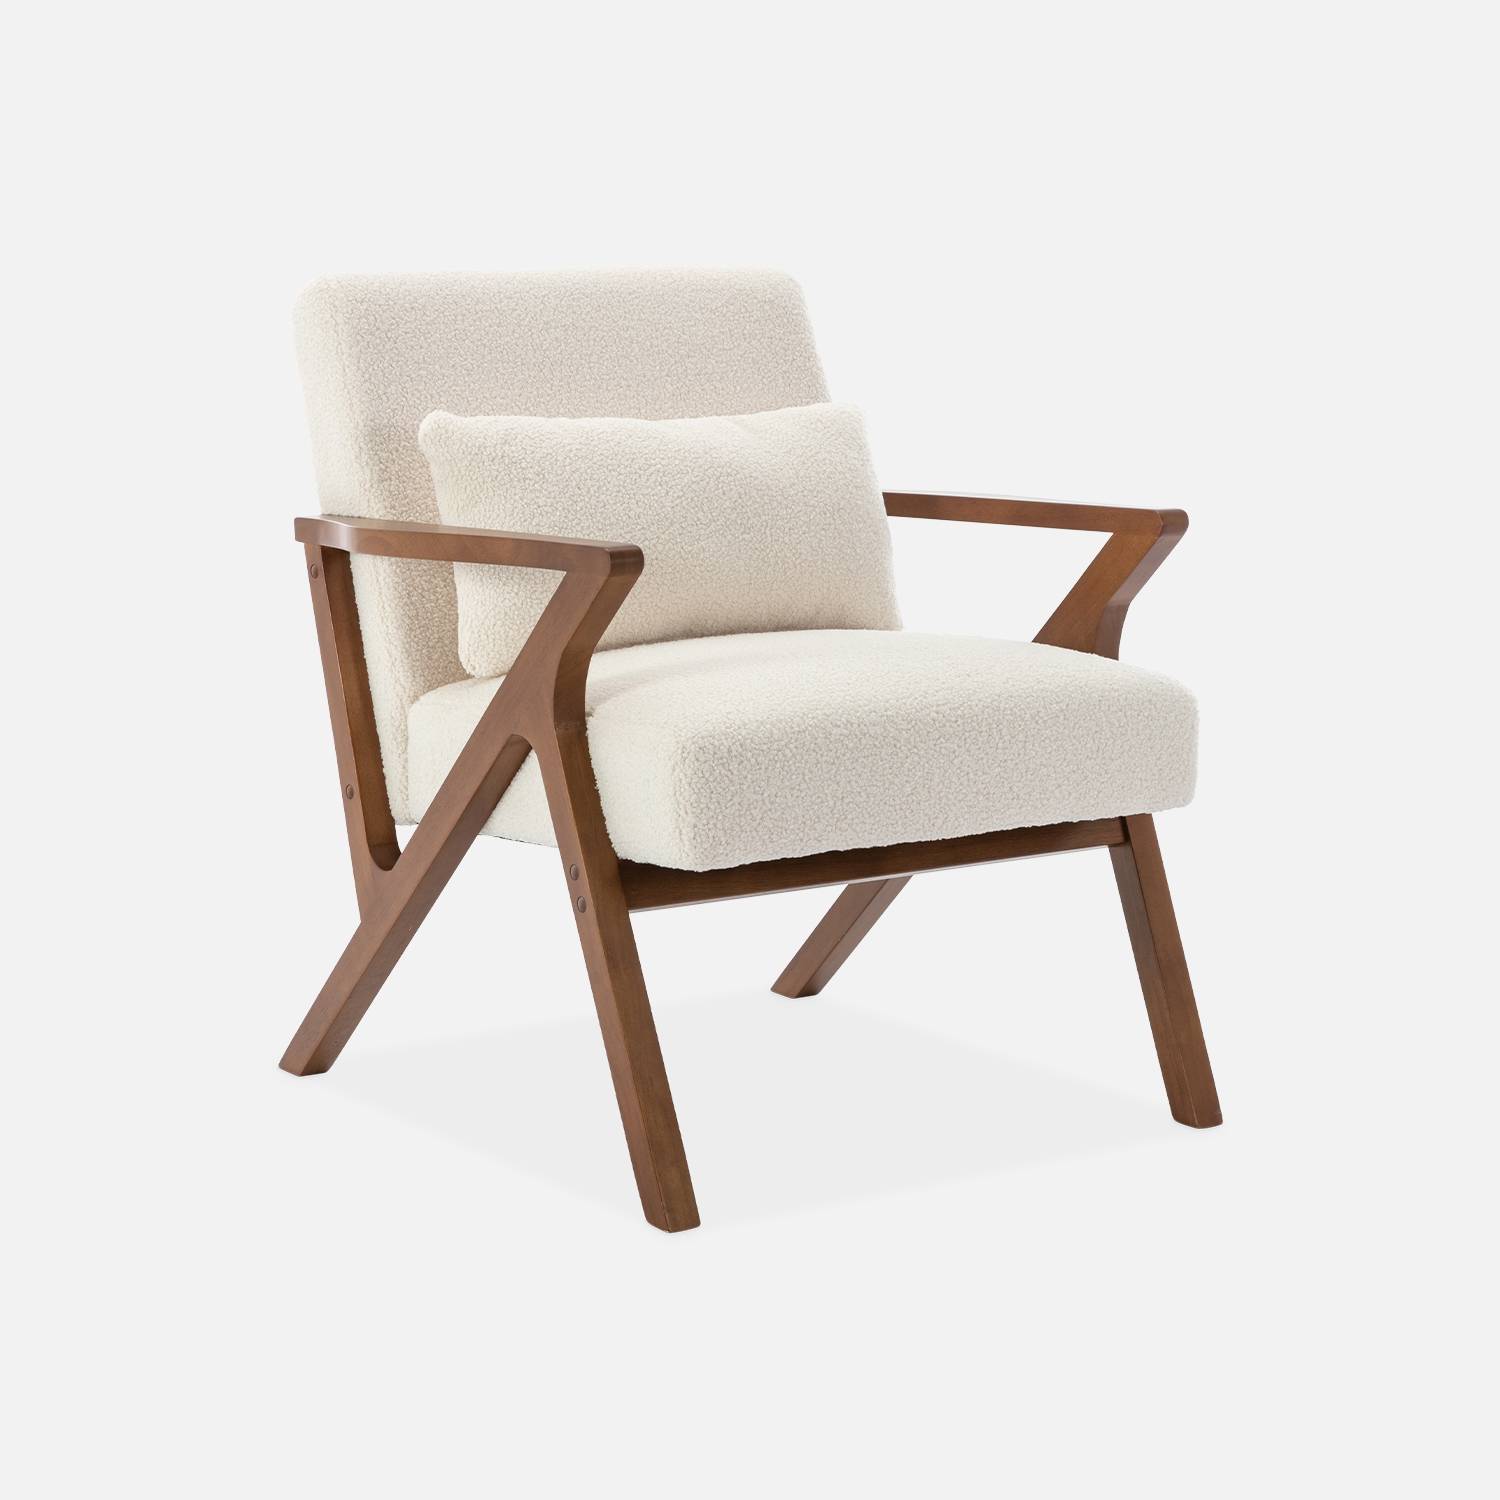 4 fundas elásticas plegables para sillas de comedor, fundas de asiento para  sillas de cocina, color mostaza, funda para silla